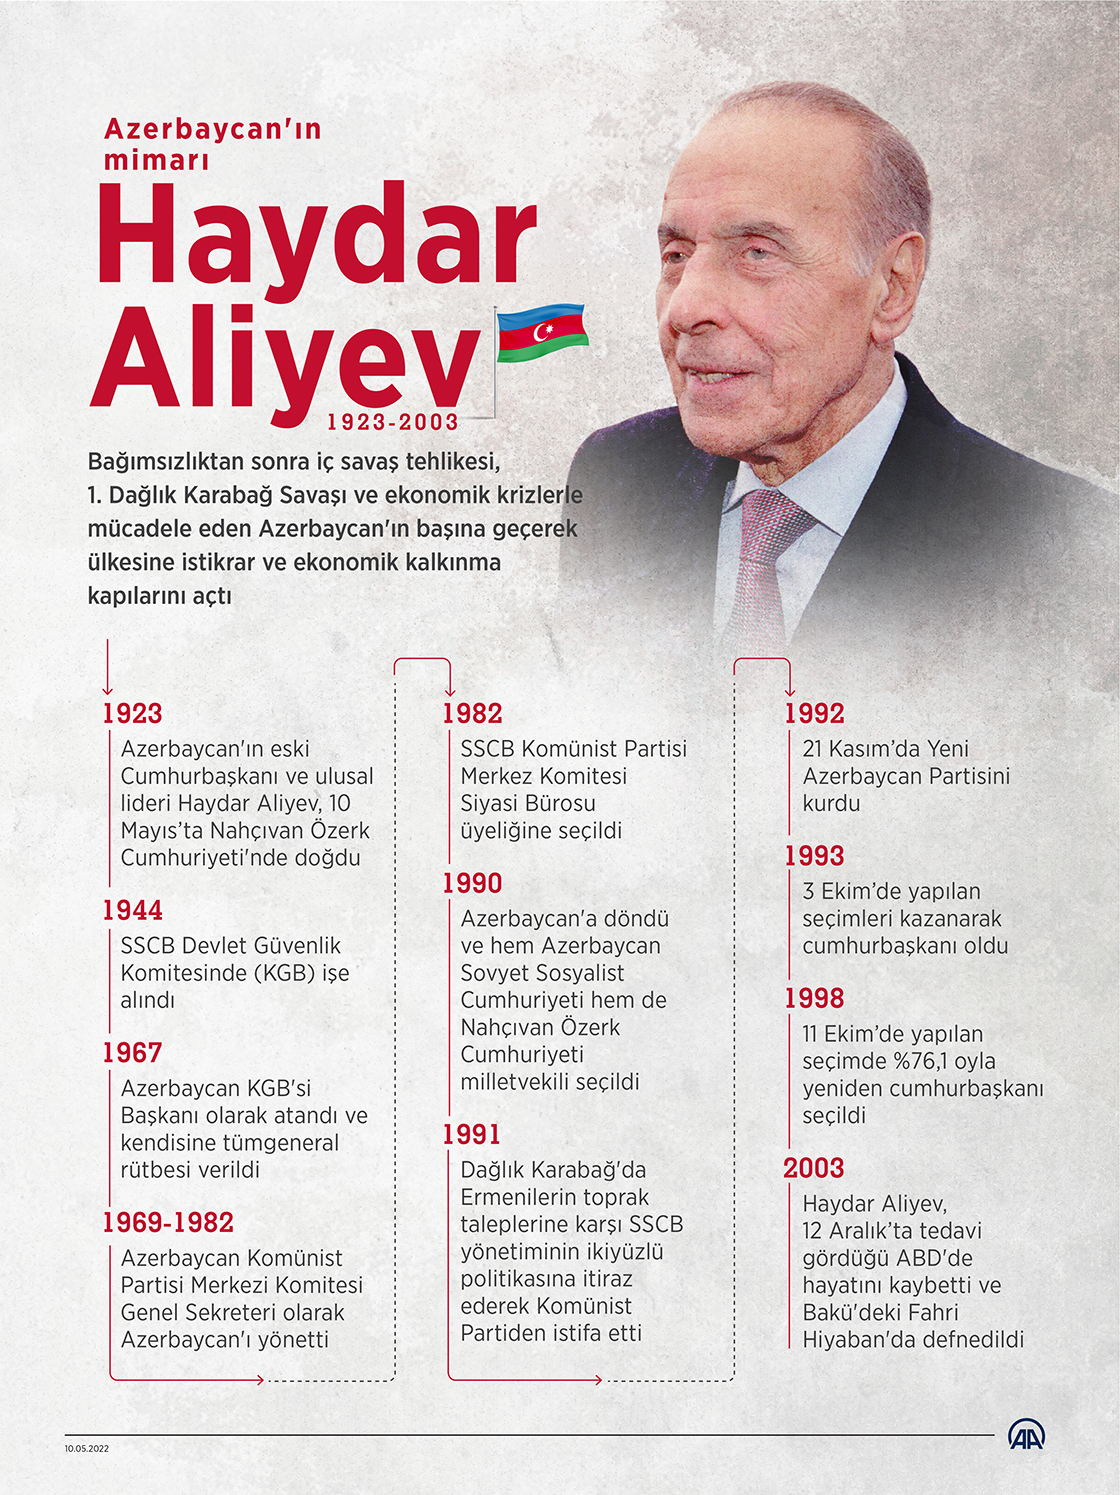 Azerbaycan'ın mimarı Haydar Aliyev doğumunun 99. yılında anılıyor